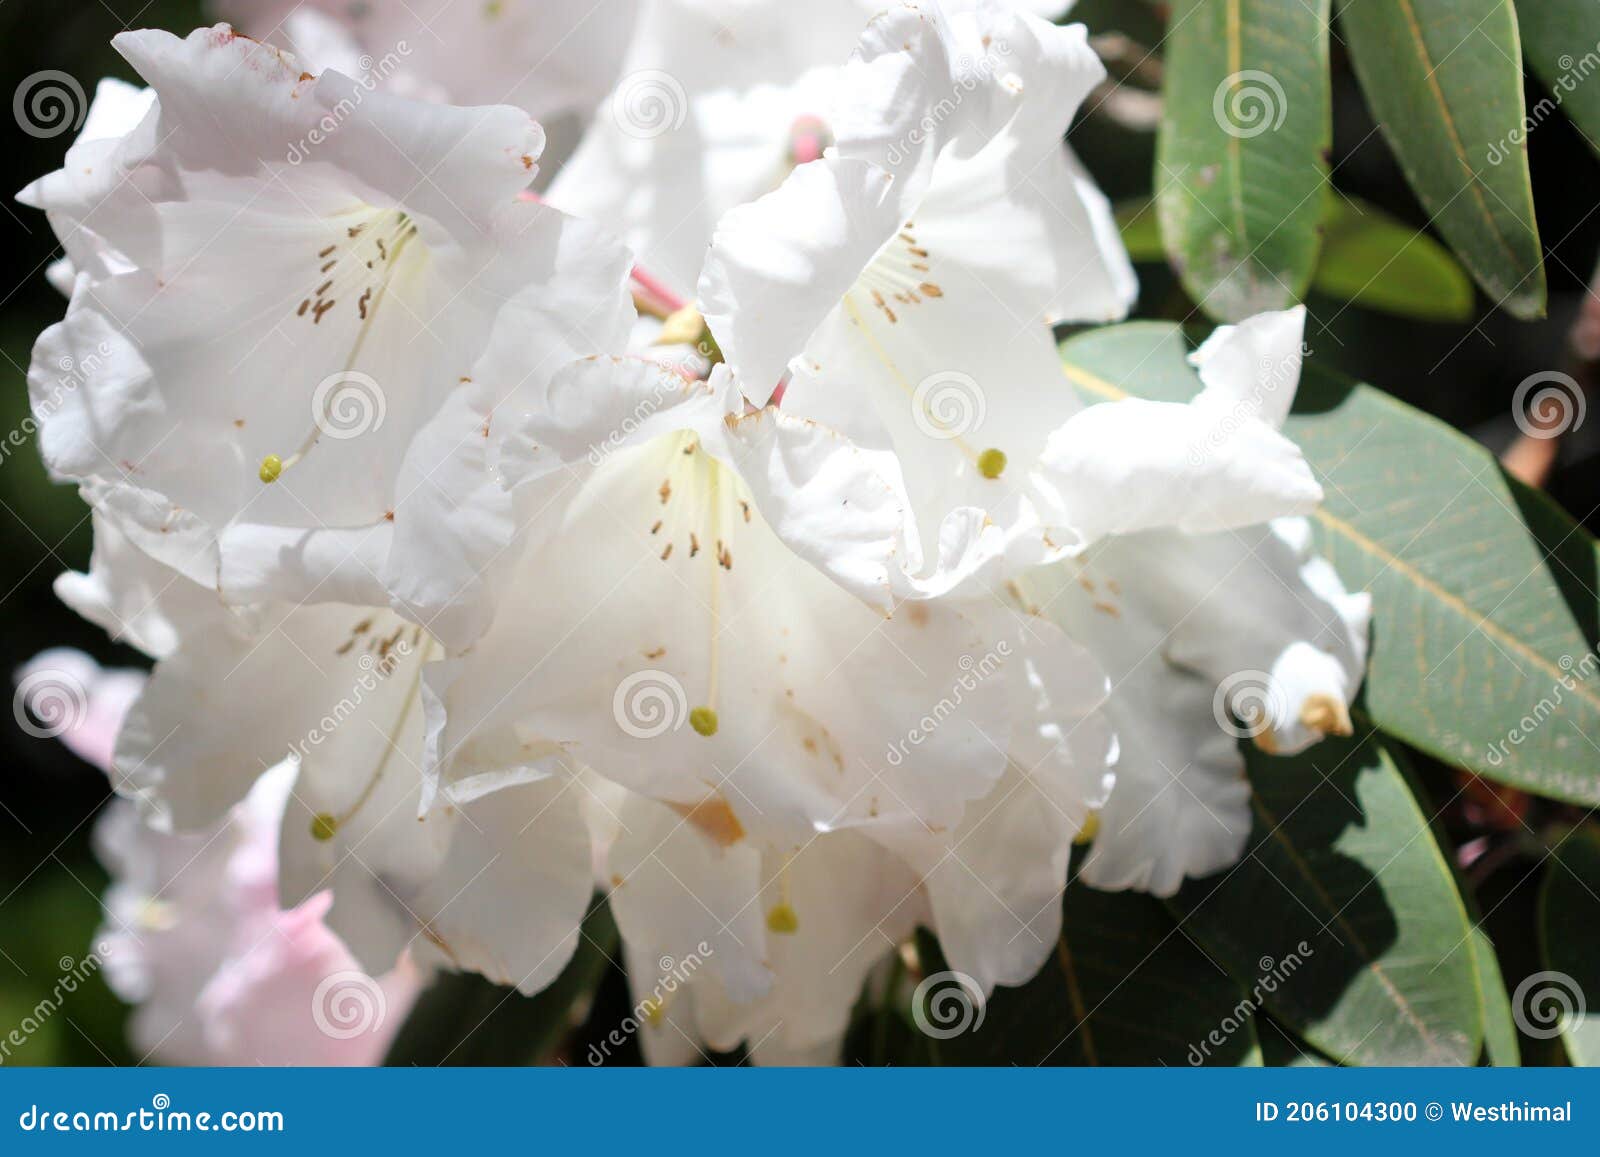 Rhododendron Loderi Rey George Flores Blancas Perfumadas Enrojecidas Rosa  Foto de archivo - Imagen de amplio, flor: 206104300